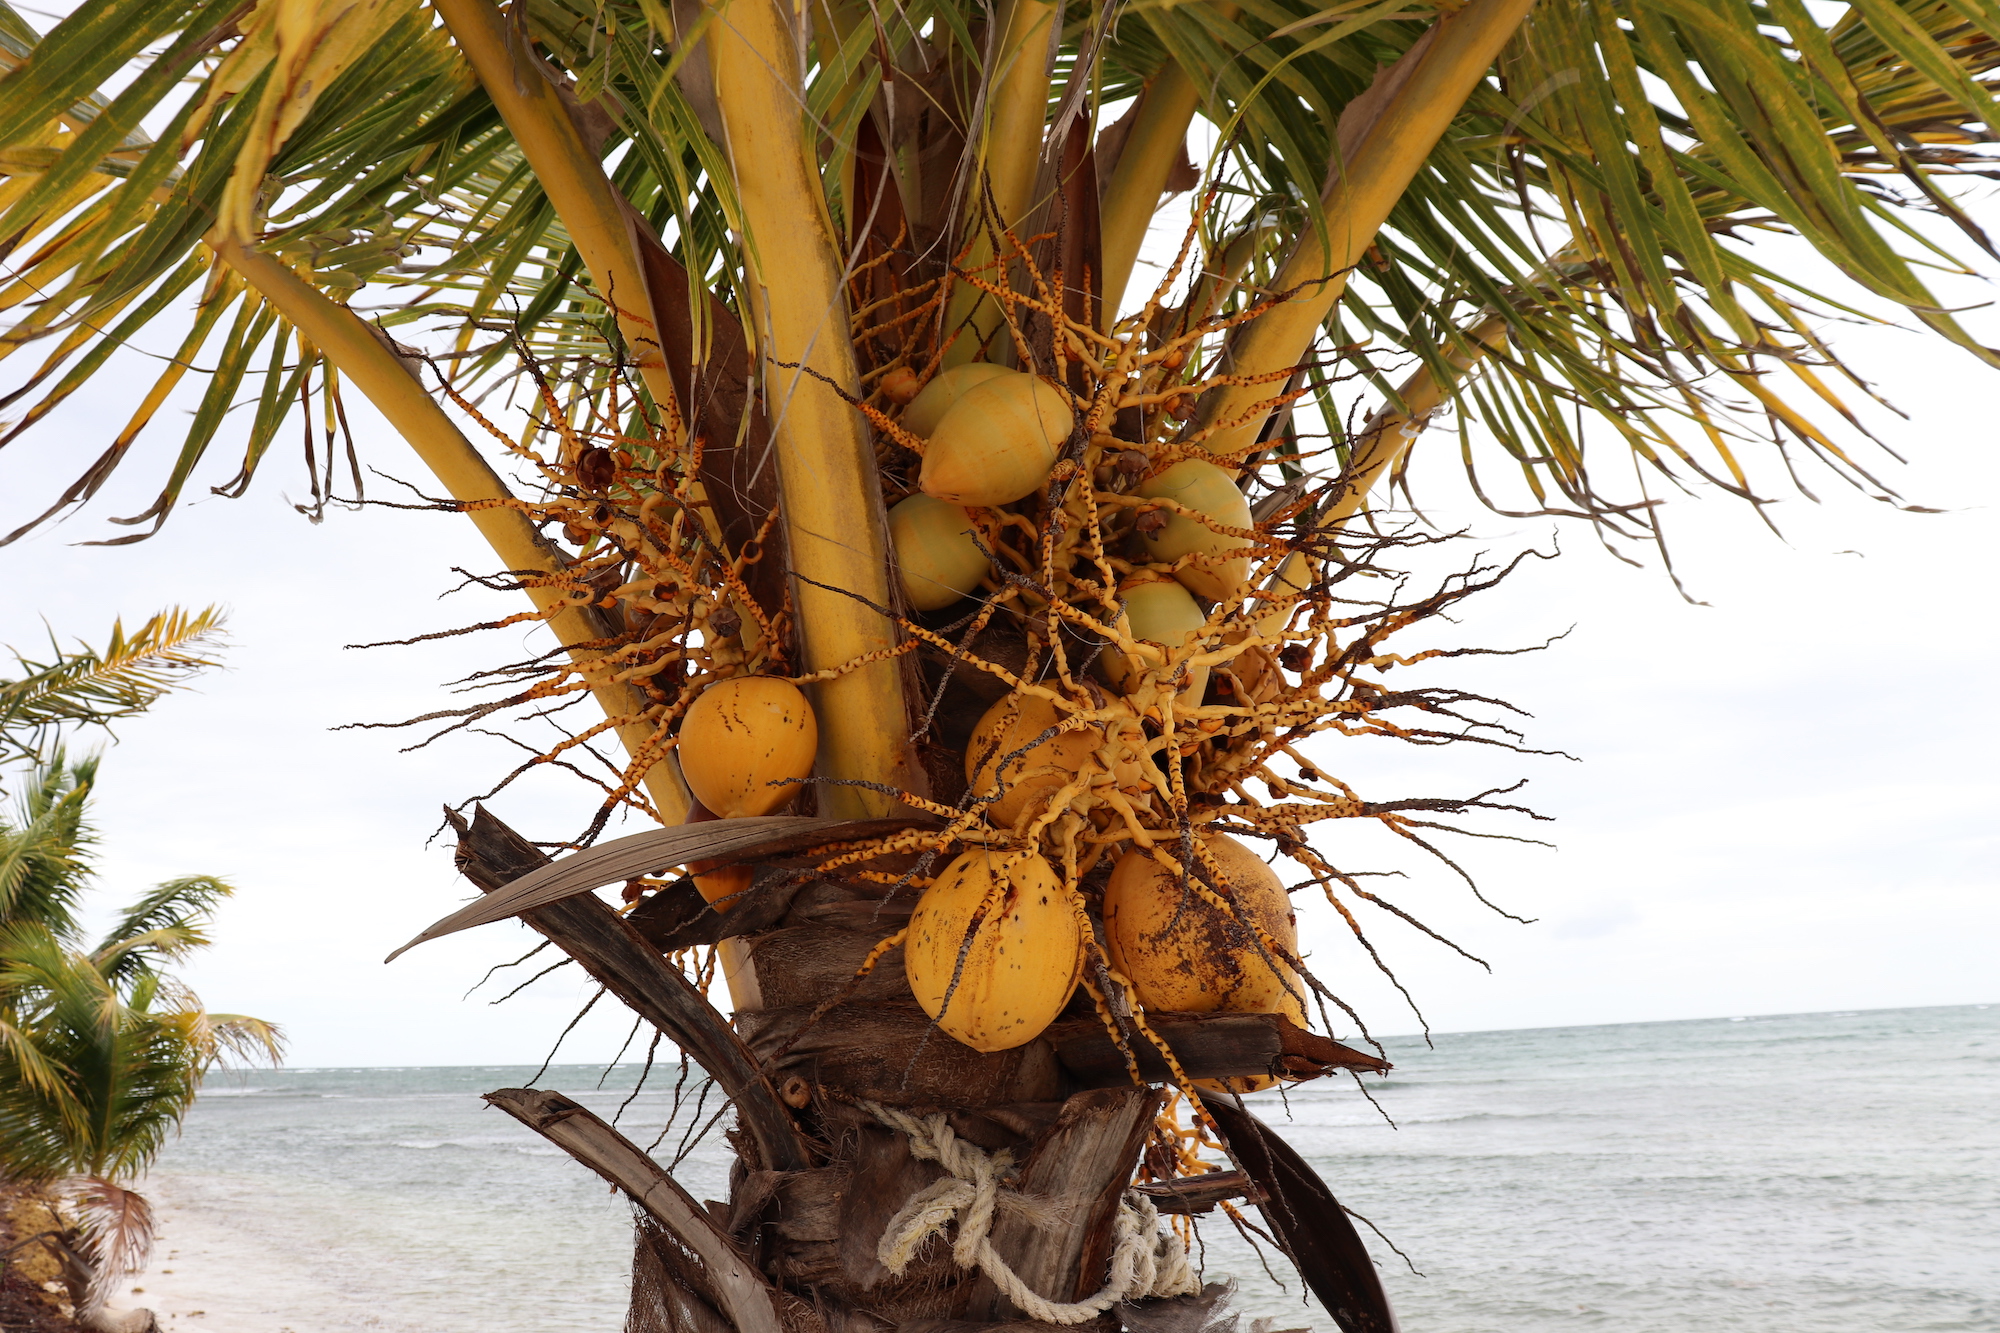 Under the coconuts and palms shade, Riviera Maya